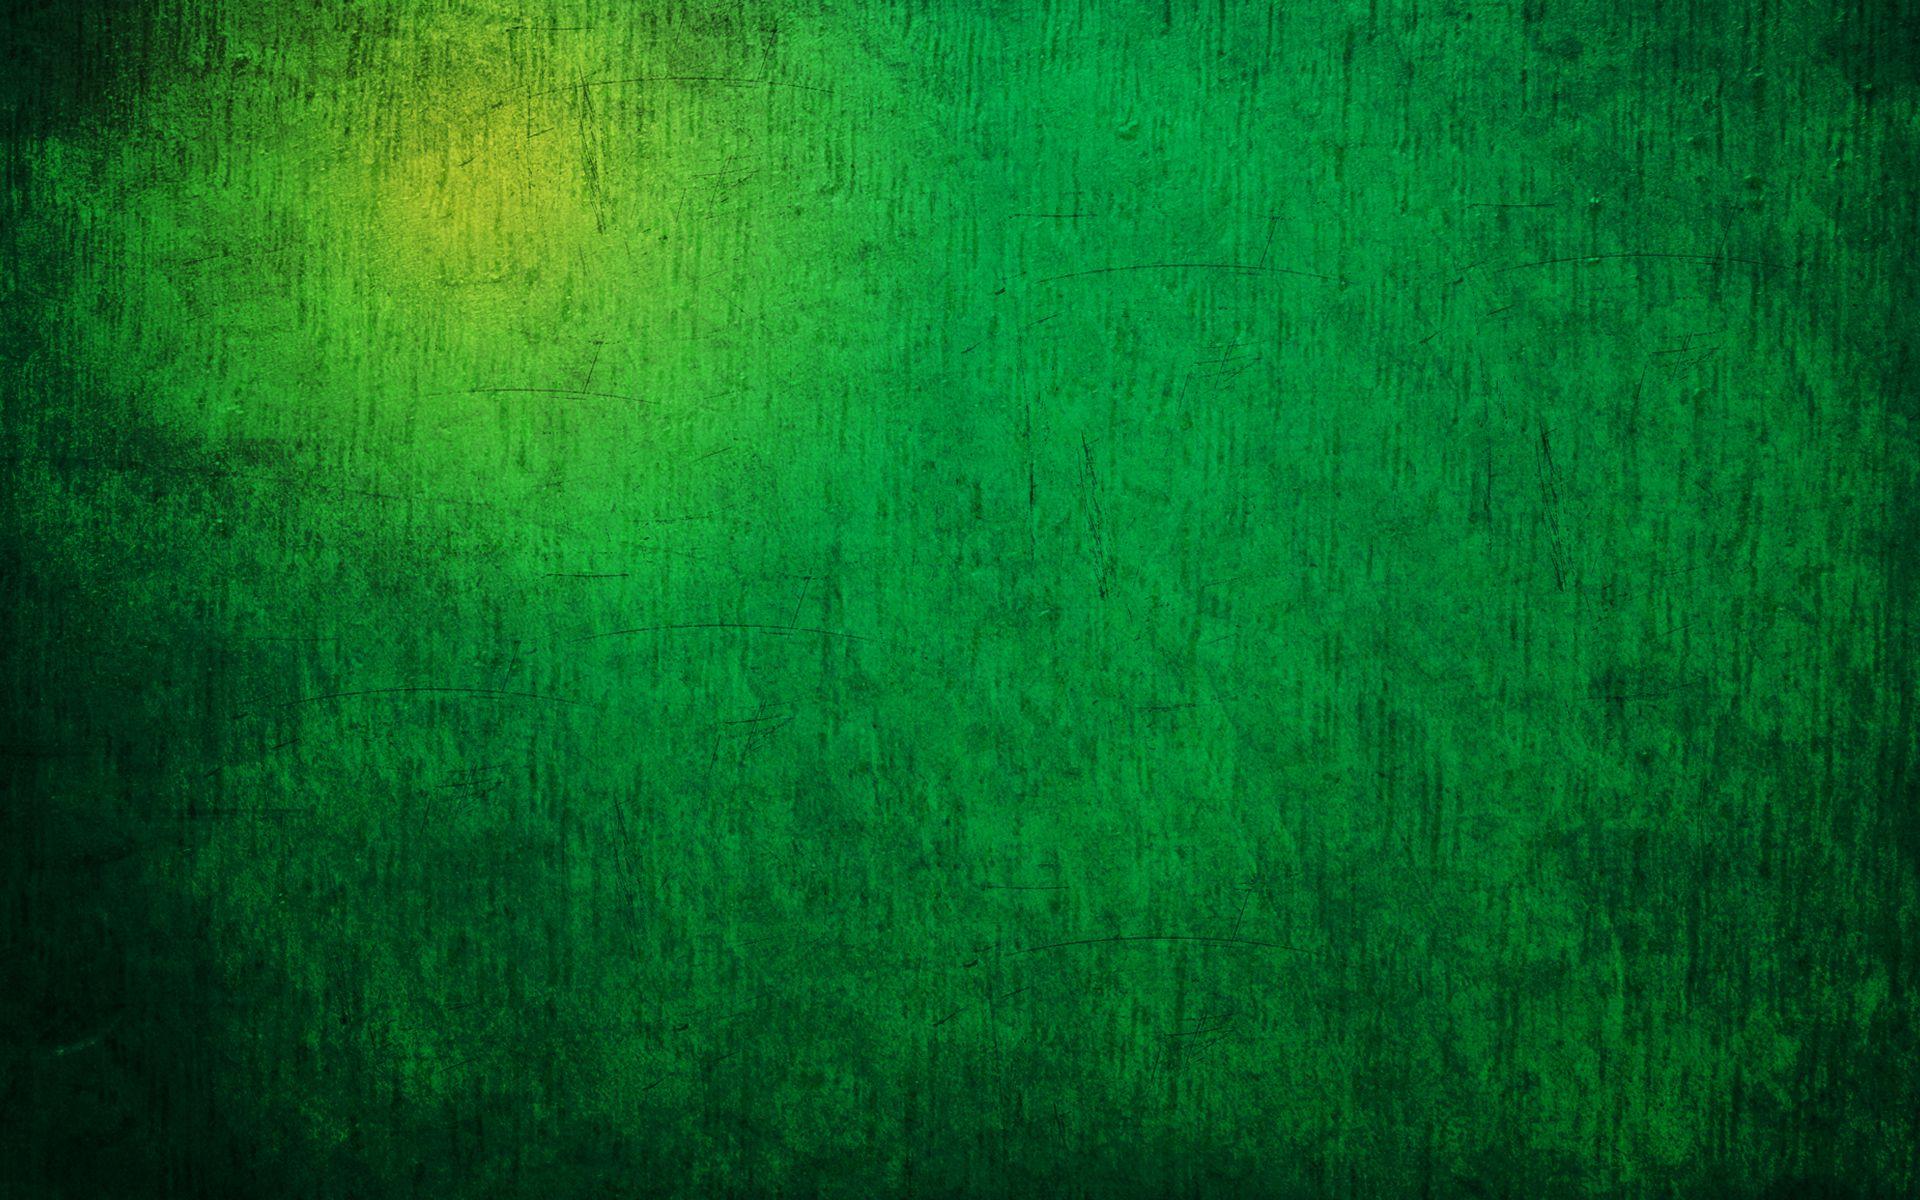 Aesthetic green wallpaper